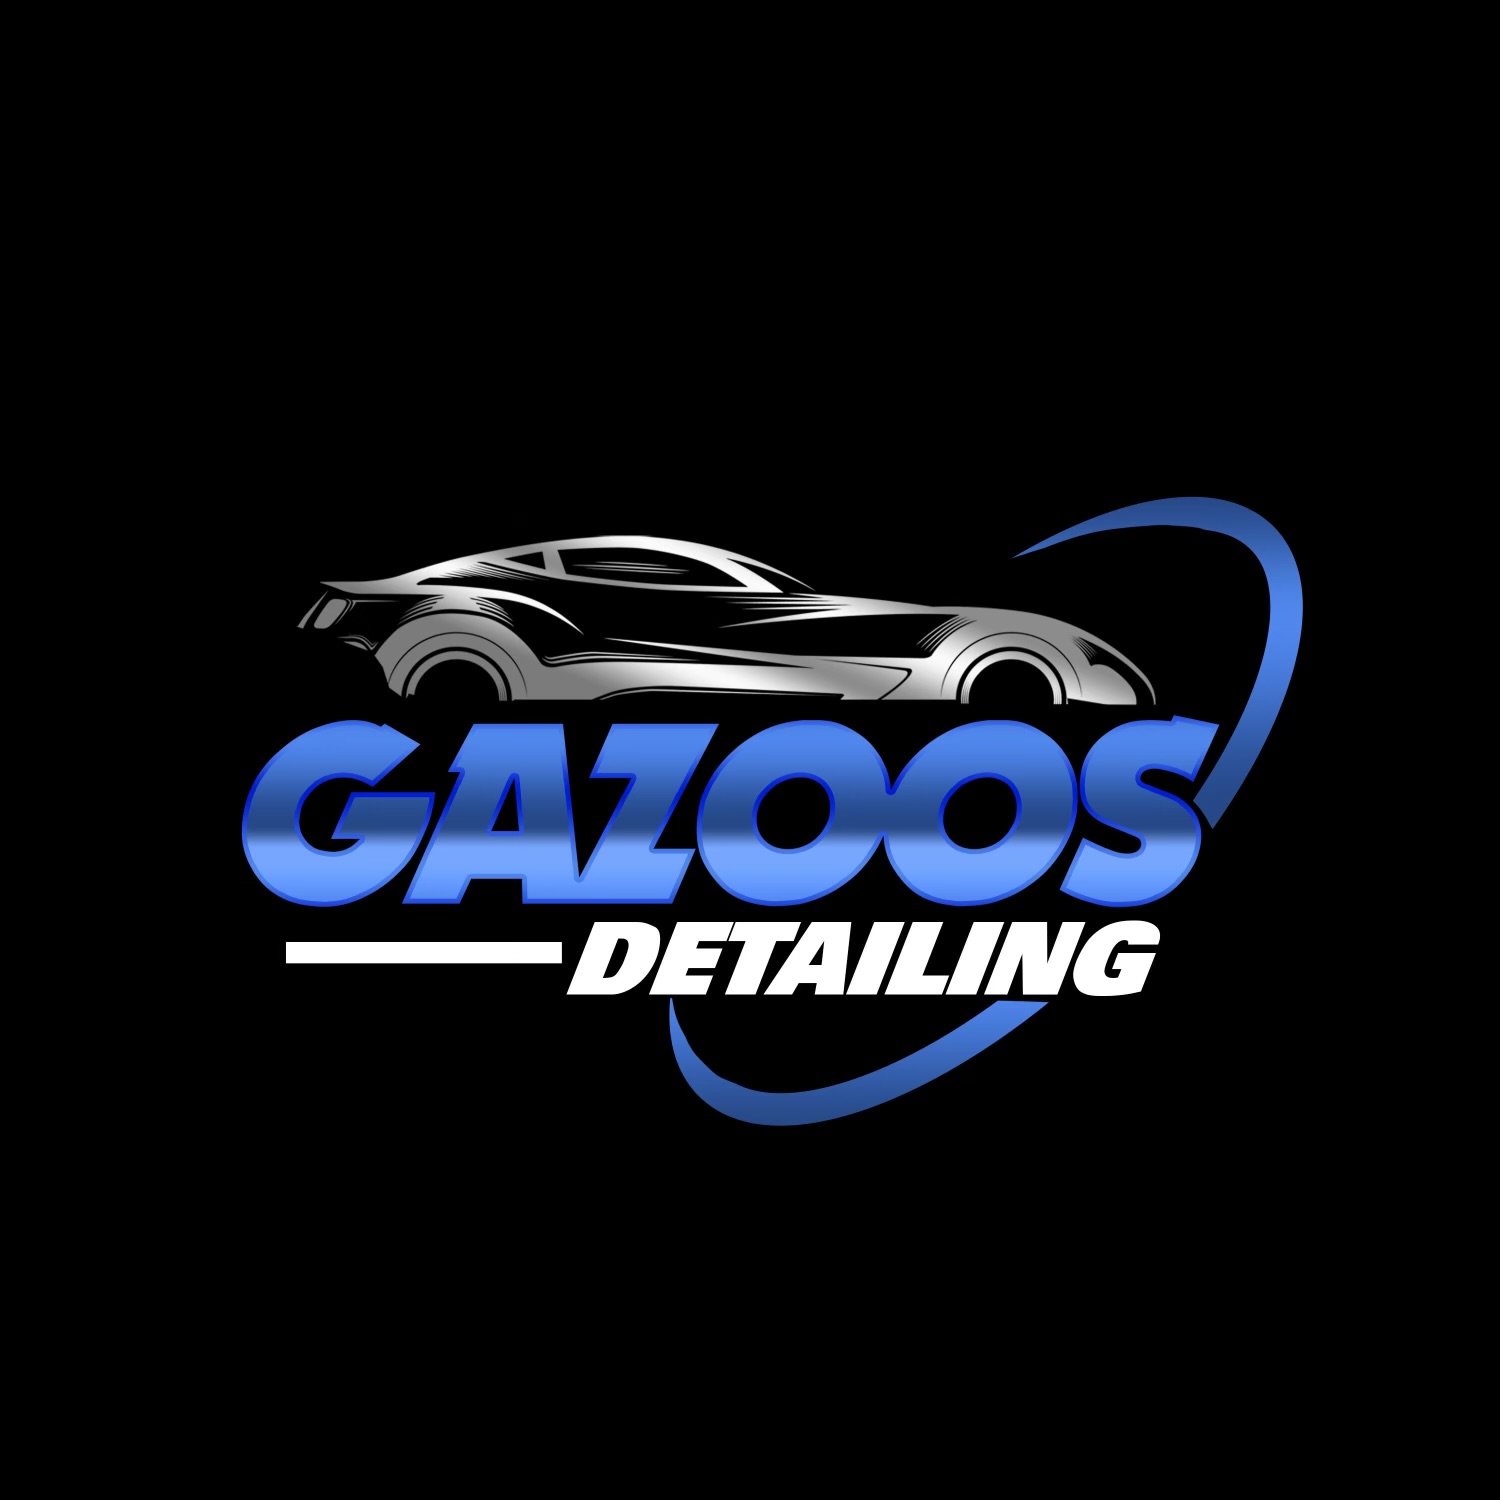 Gazoos Detailing